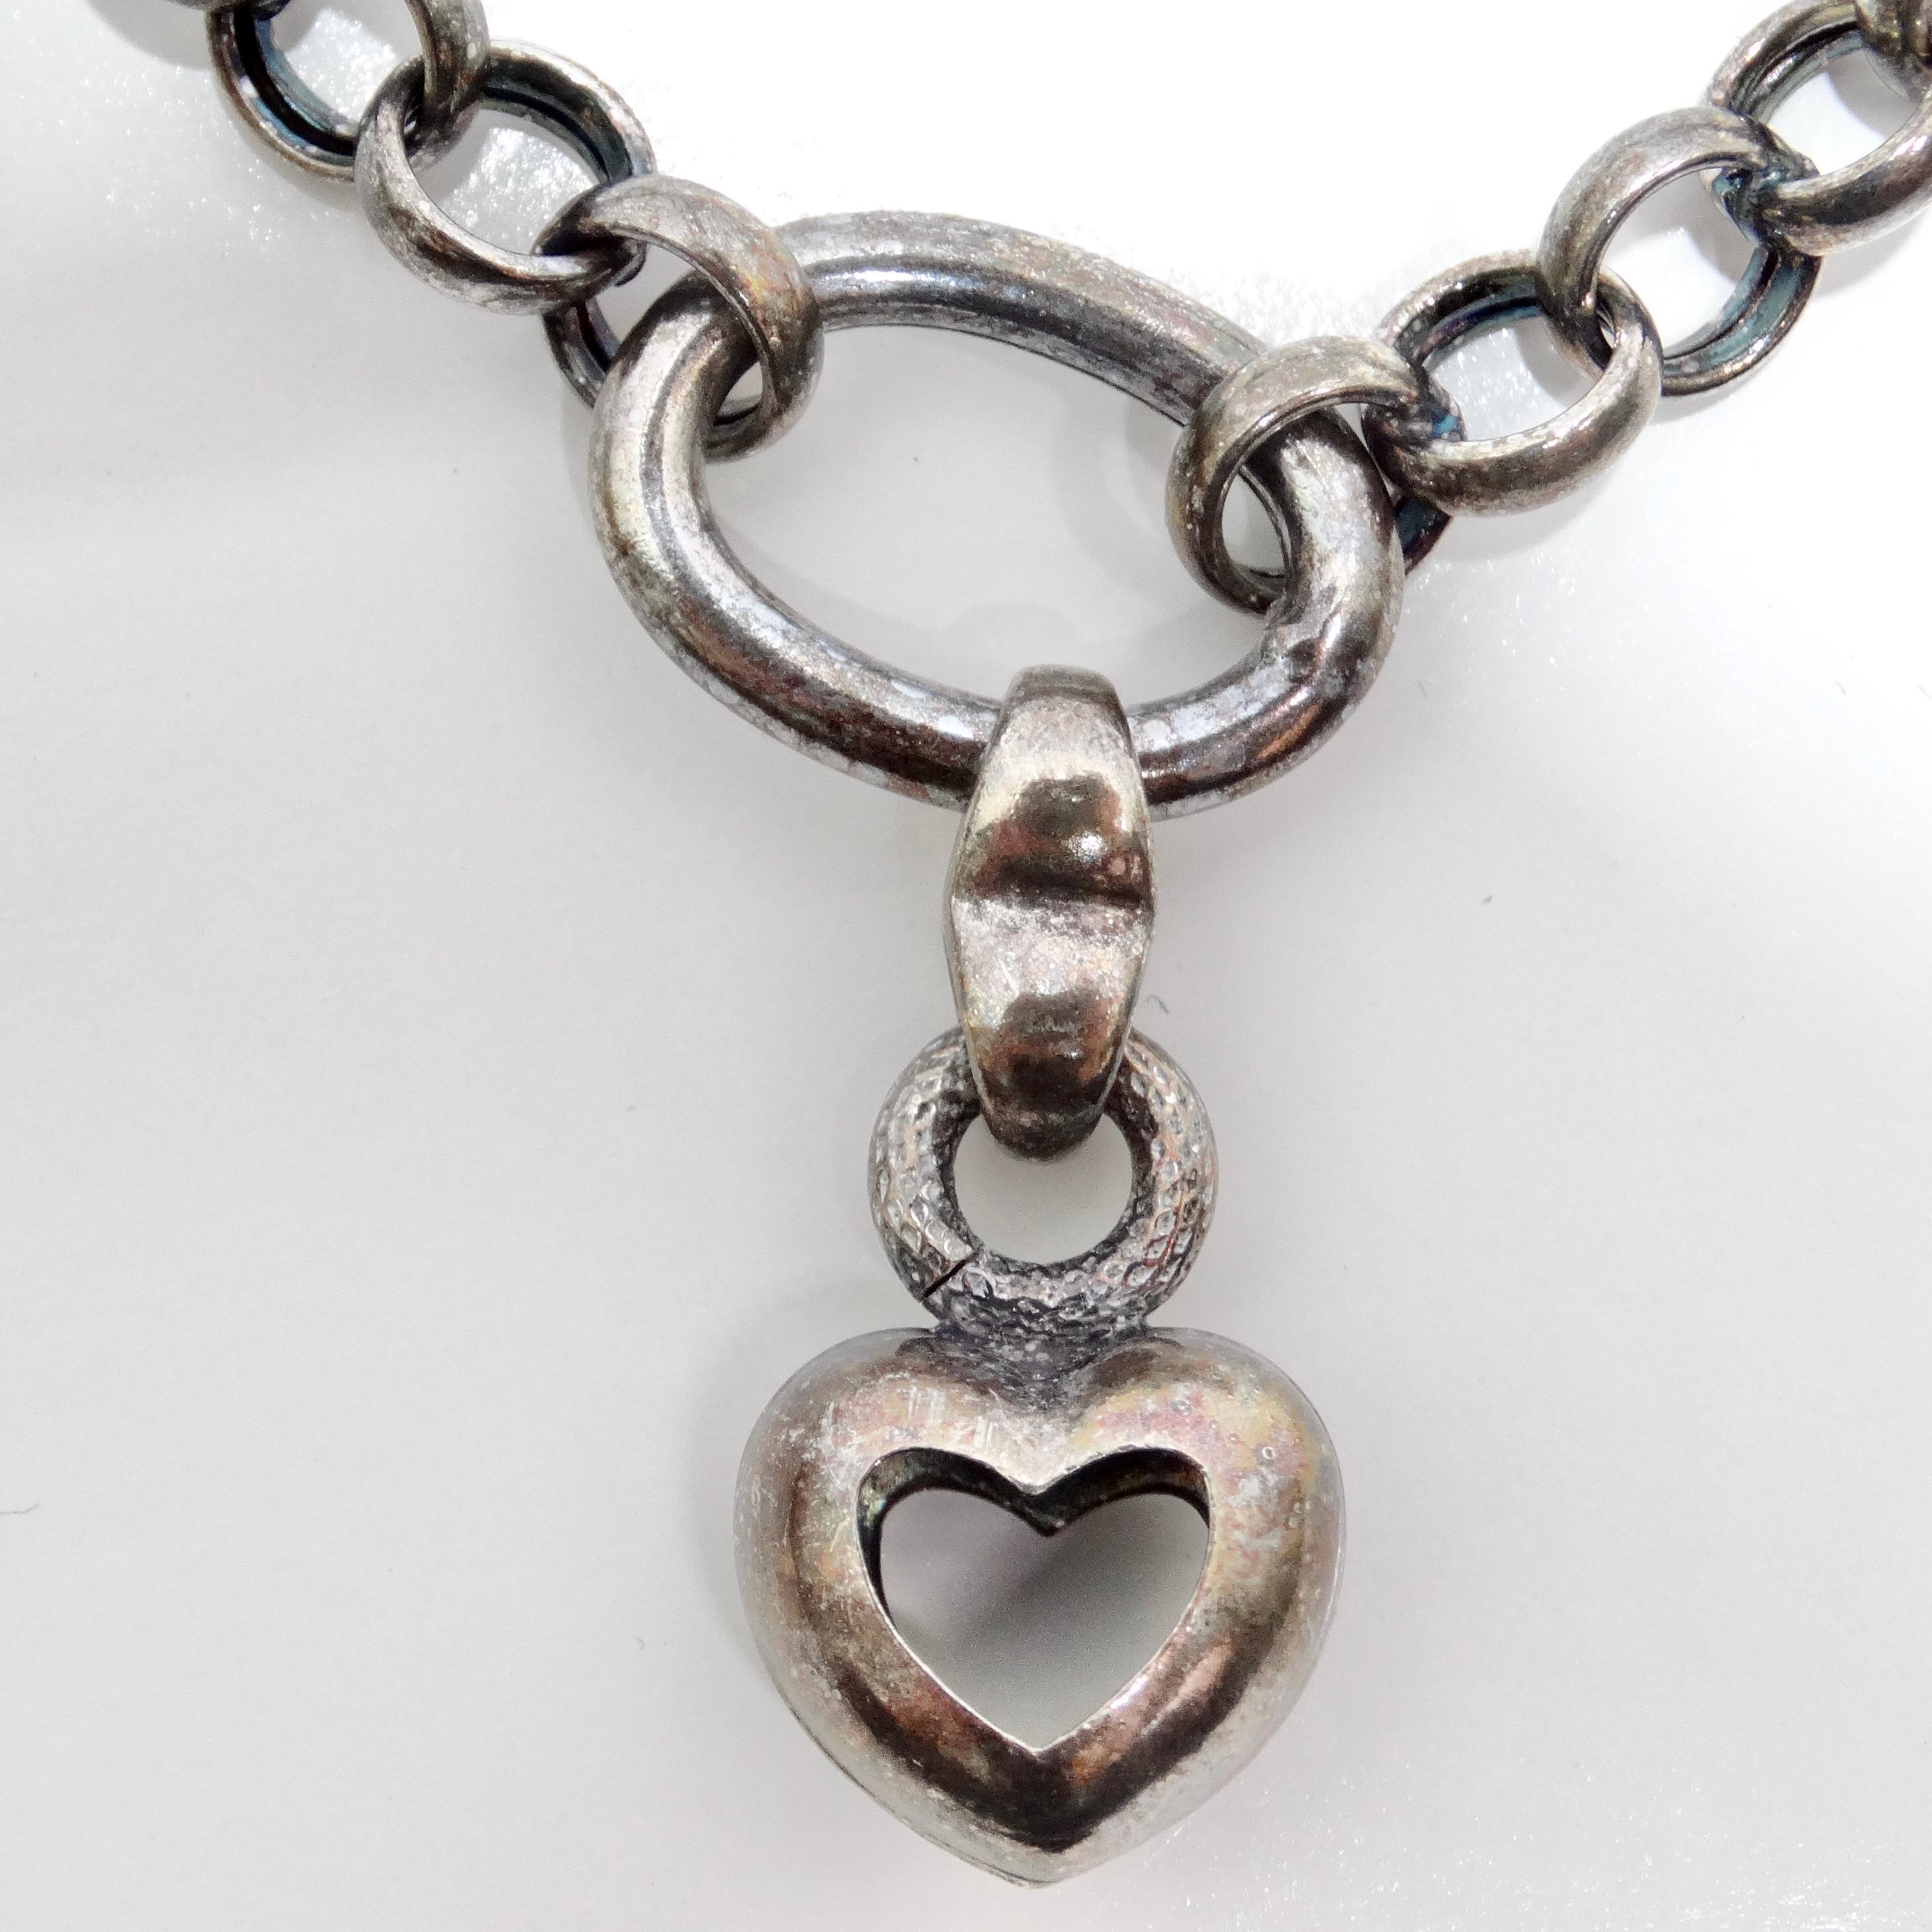 Das Herzarmband aus massivem Silber aus den 1970er Jahren ist ein charmantes Vintage-Stück, das jeder Schmucksammlung einen Hauch von Süße und Eleganz verleiht. Dieses wunderschöne Armband besteht aus einer reinen Silberkette mit einem bezaubernden